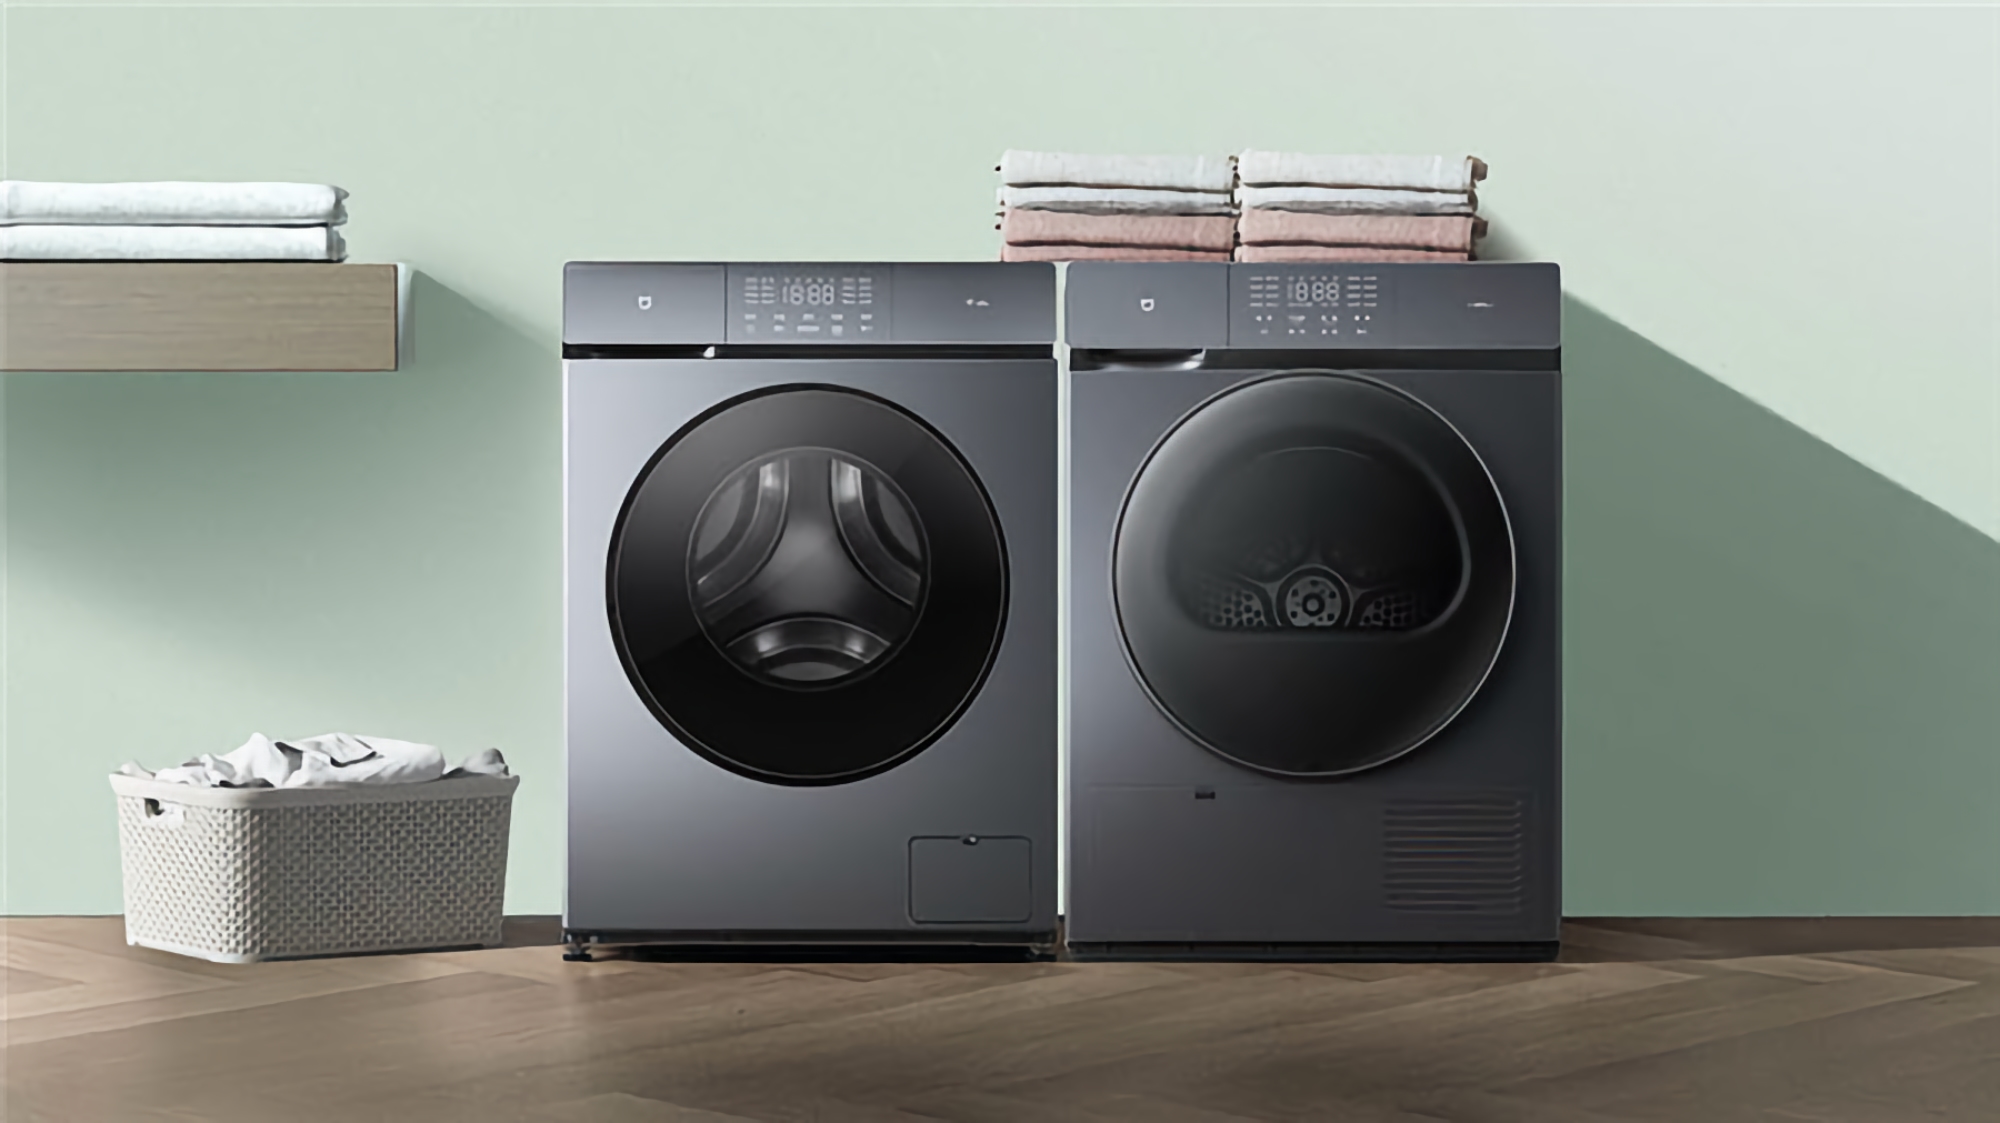 Xiaomi führte unter der Marke MiJia eine Waschmaschine und einen Trockner mit der Funktion zum Sterilisieren von Kleidung für 716 US-Dollar ein